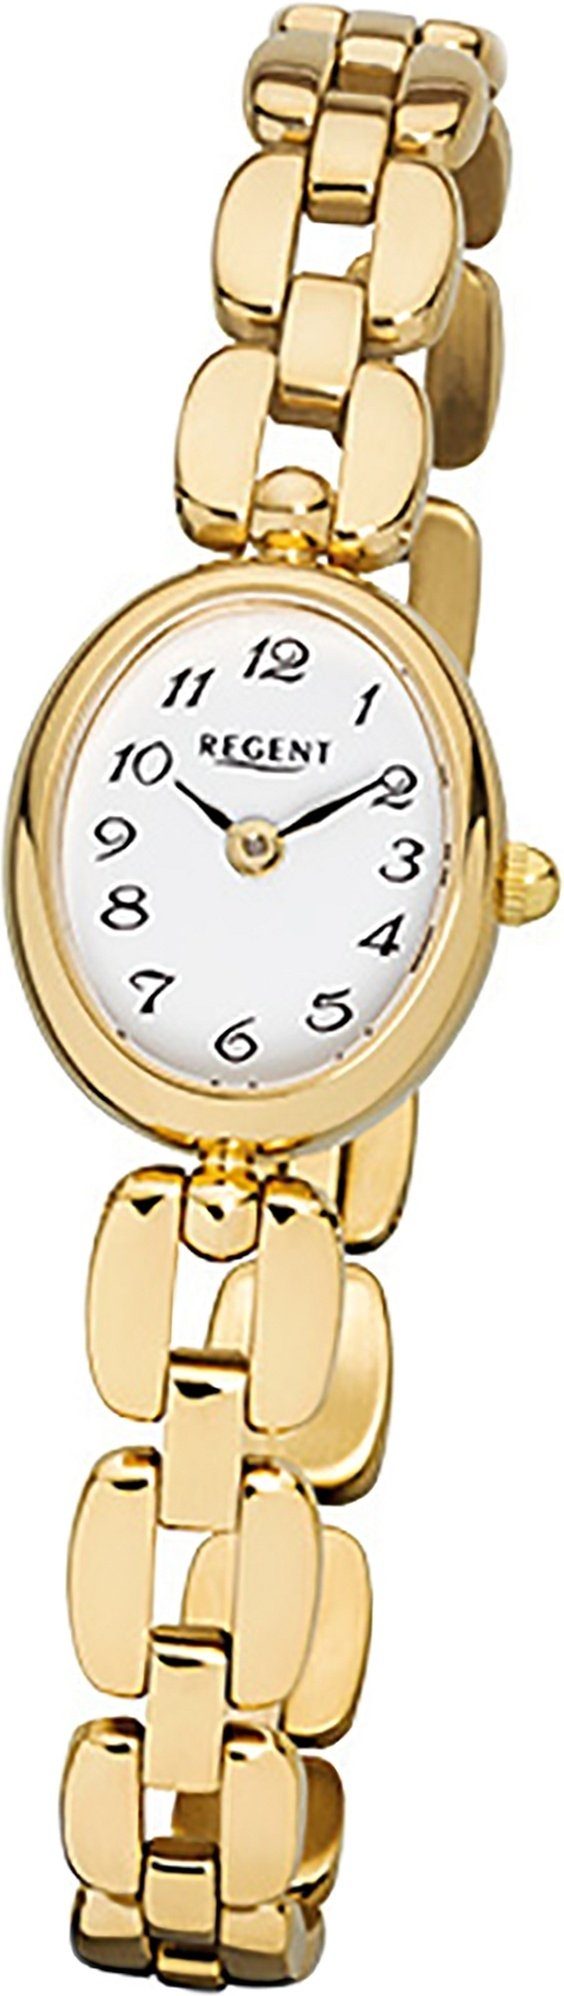 Damenuhr Regent Gehäuse, Quarzuhr Edelstahl, Uhr Quarzuhr, Regent goldarmband, ionenplattiert mit F-968 Damen ovales Stahl kl